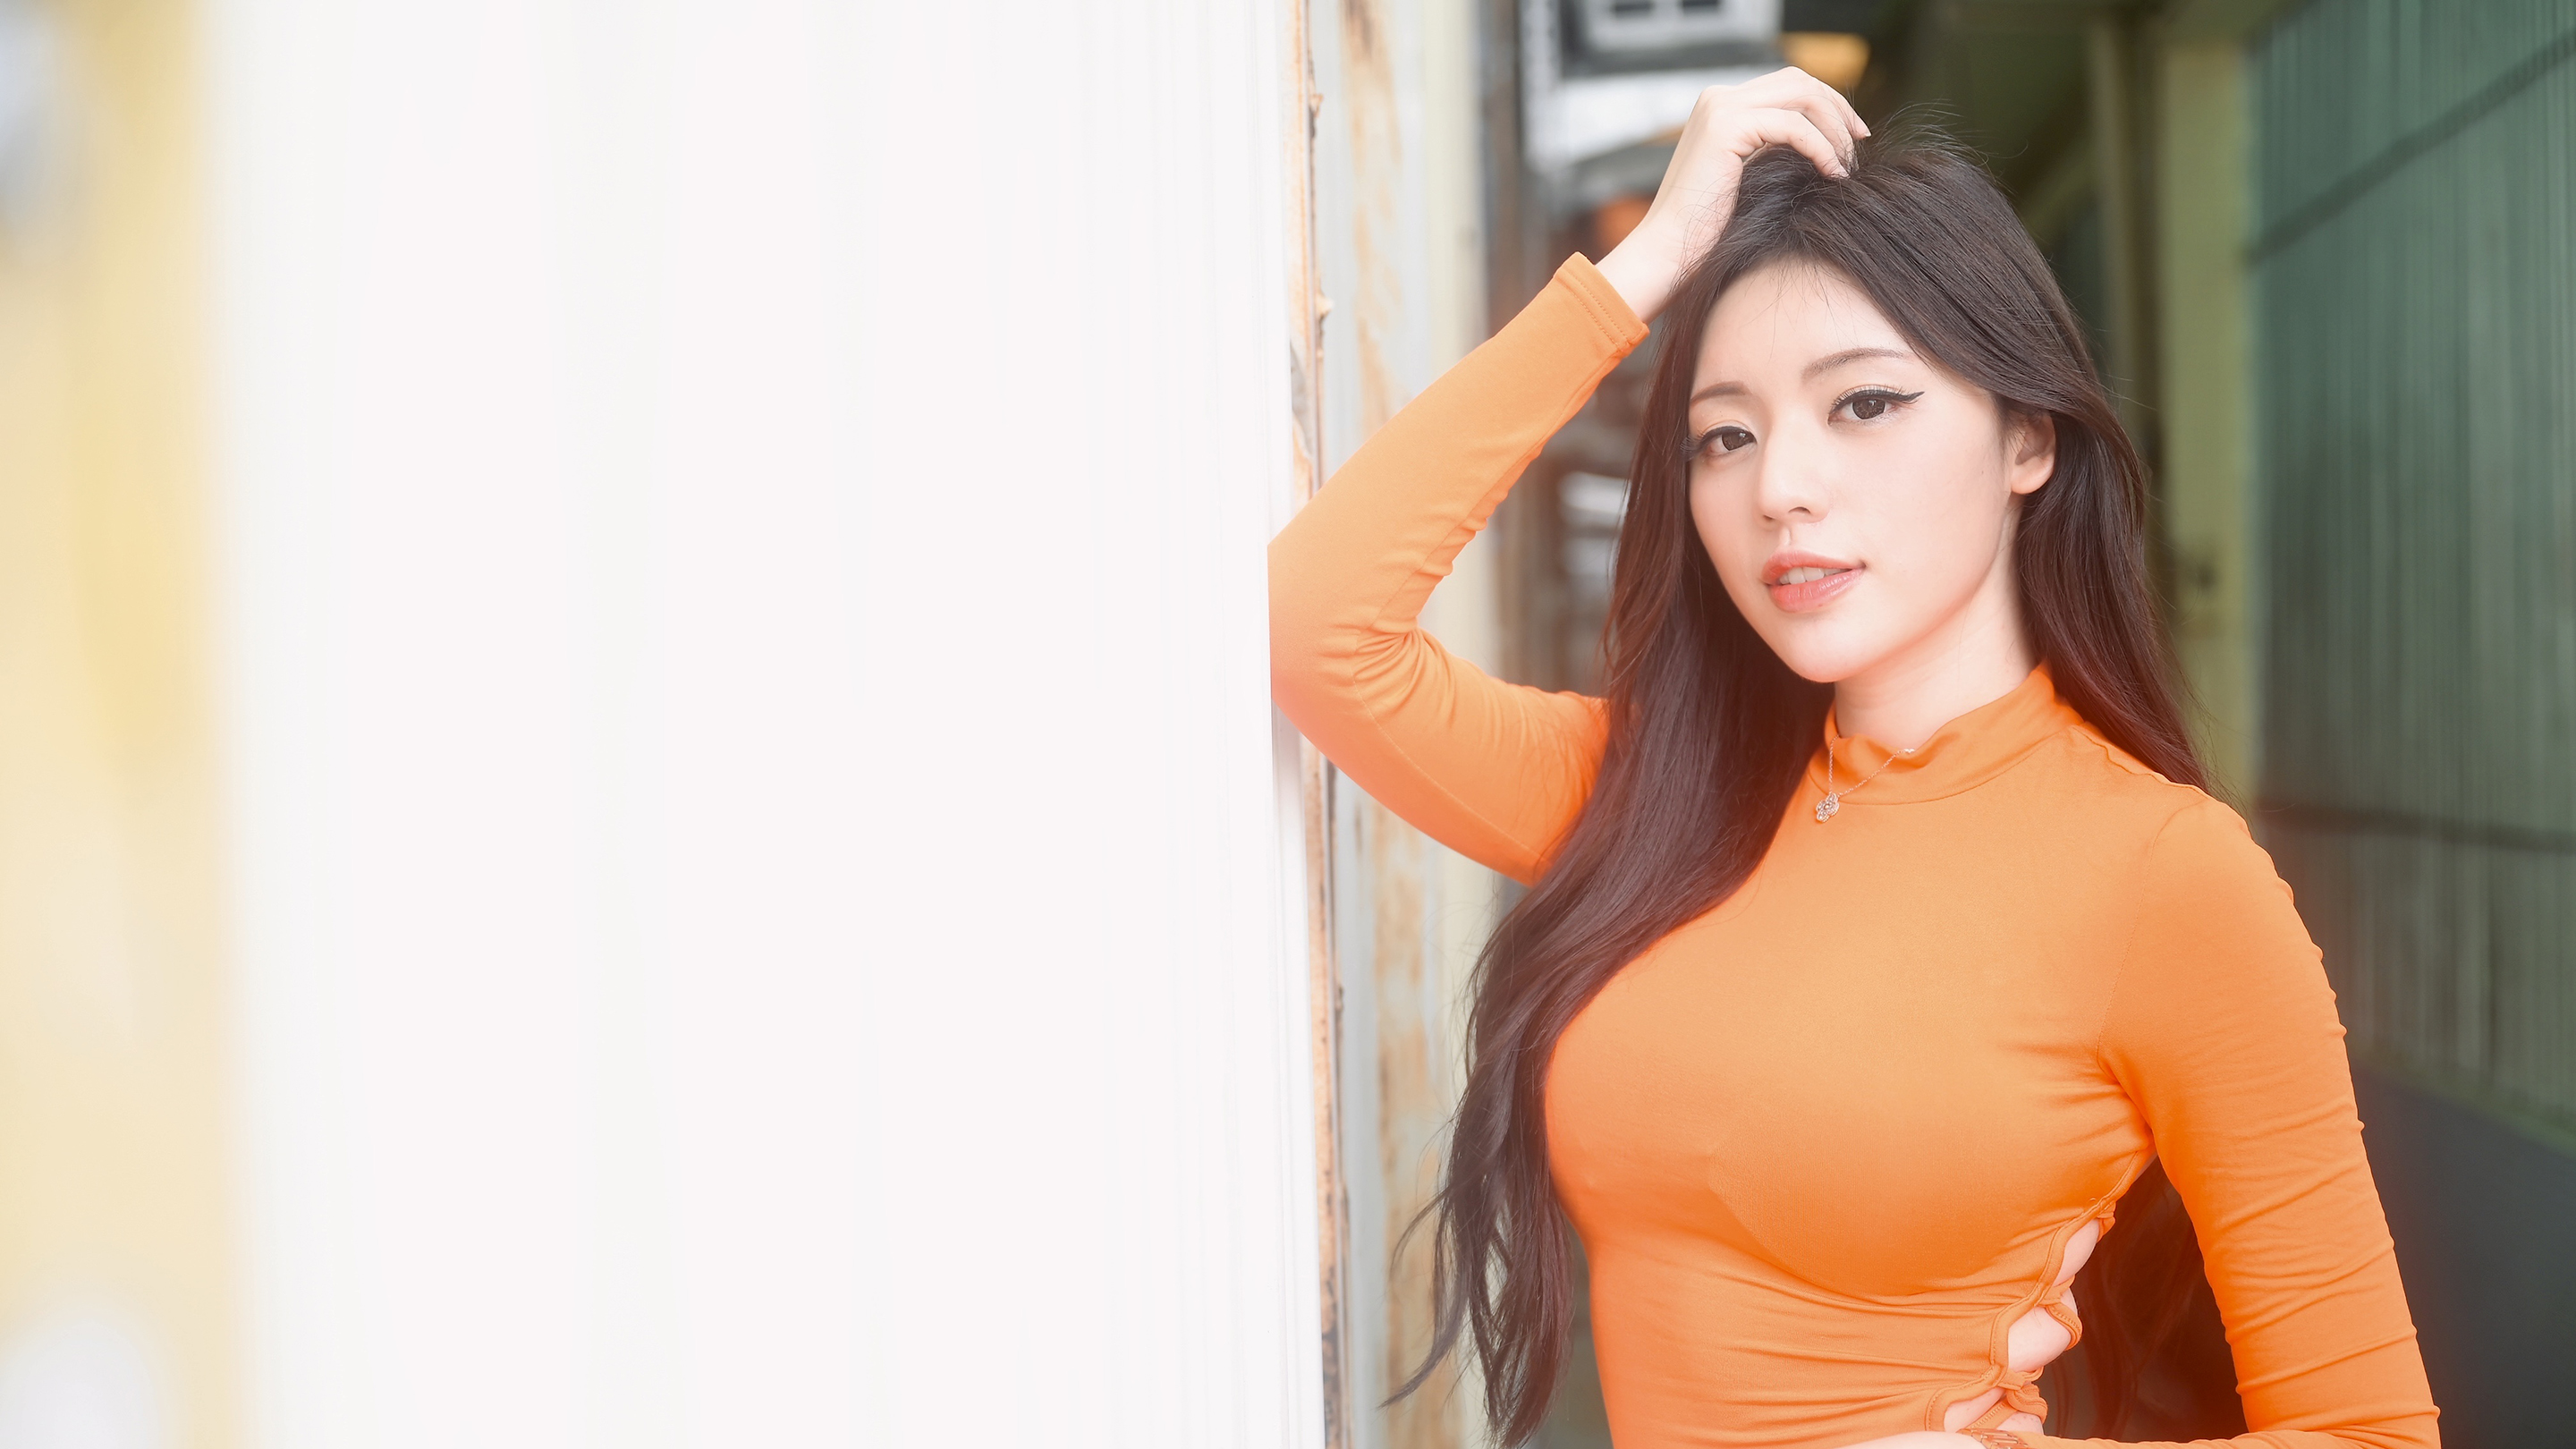 Asian Women Model Orange Dress Long Hair Brunette Looking At Viewer Women Outdoors 2880x1620